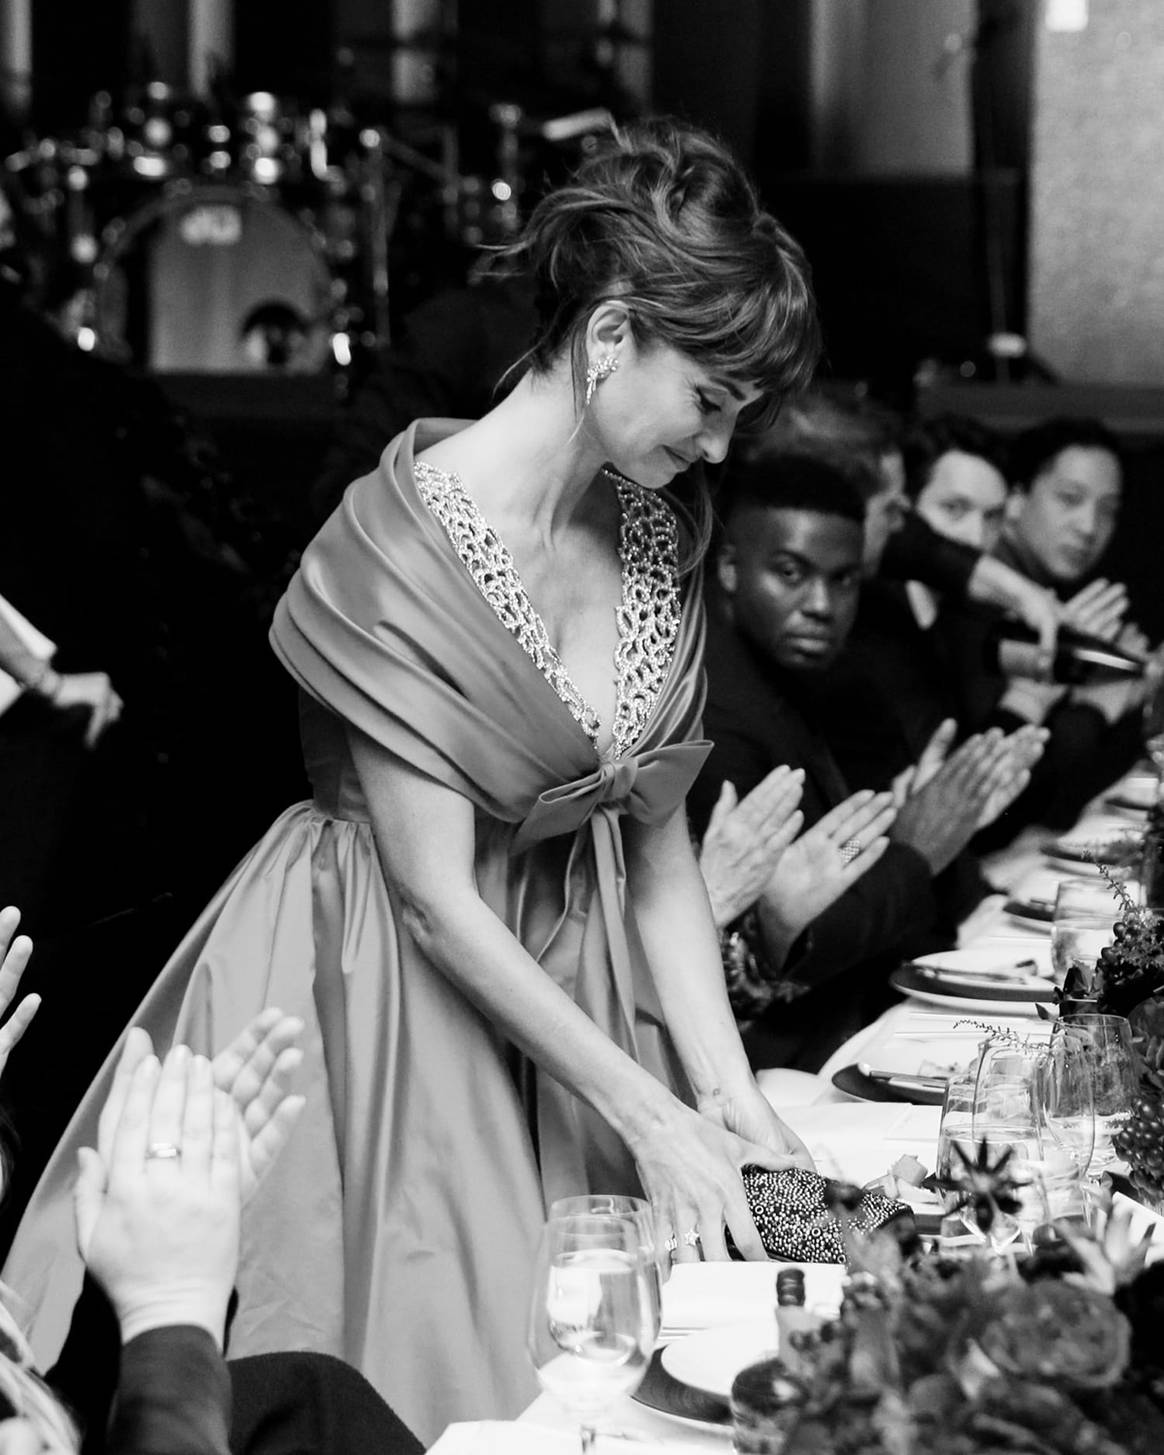 Photo Credits: Penélope Cruz, 14ª gala anual Film Benefit 2021 del MoMa, patrocinada por Chanel. Chanel, fotografía de cortesía.